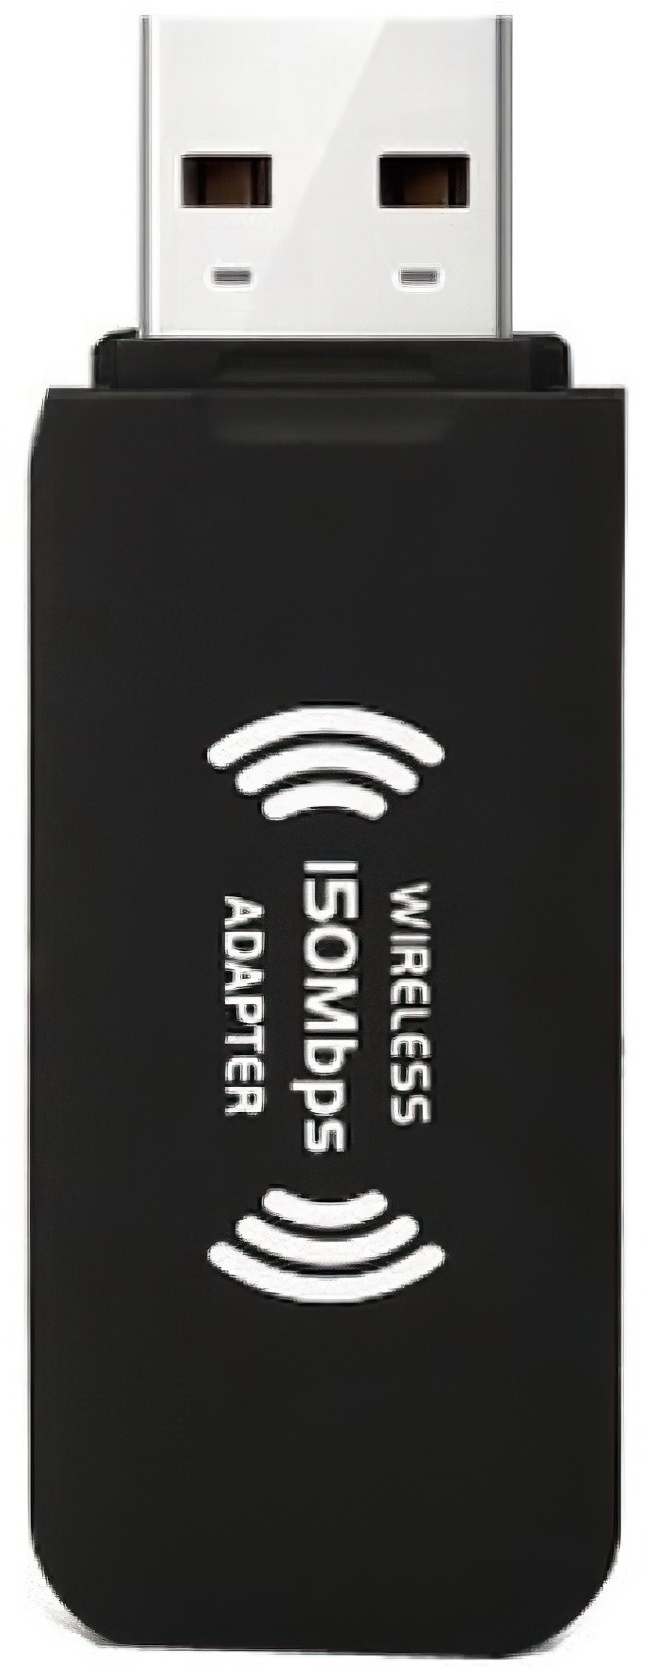 Wi-Fi адаптер rt3070 КАРКАМ - фото 1